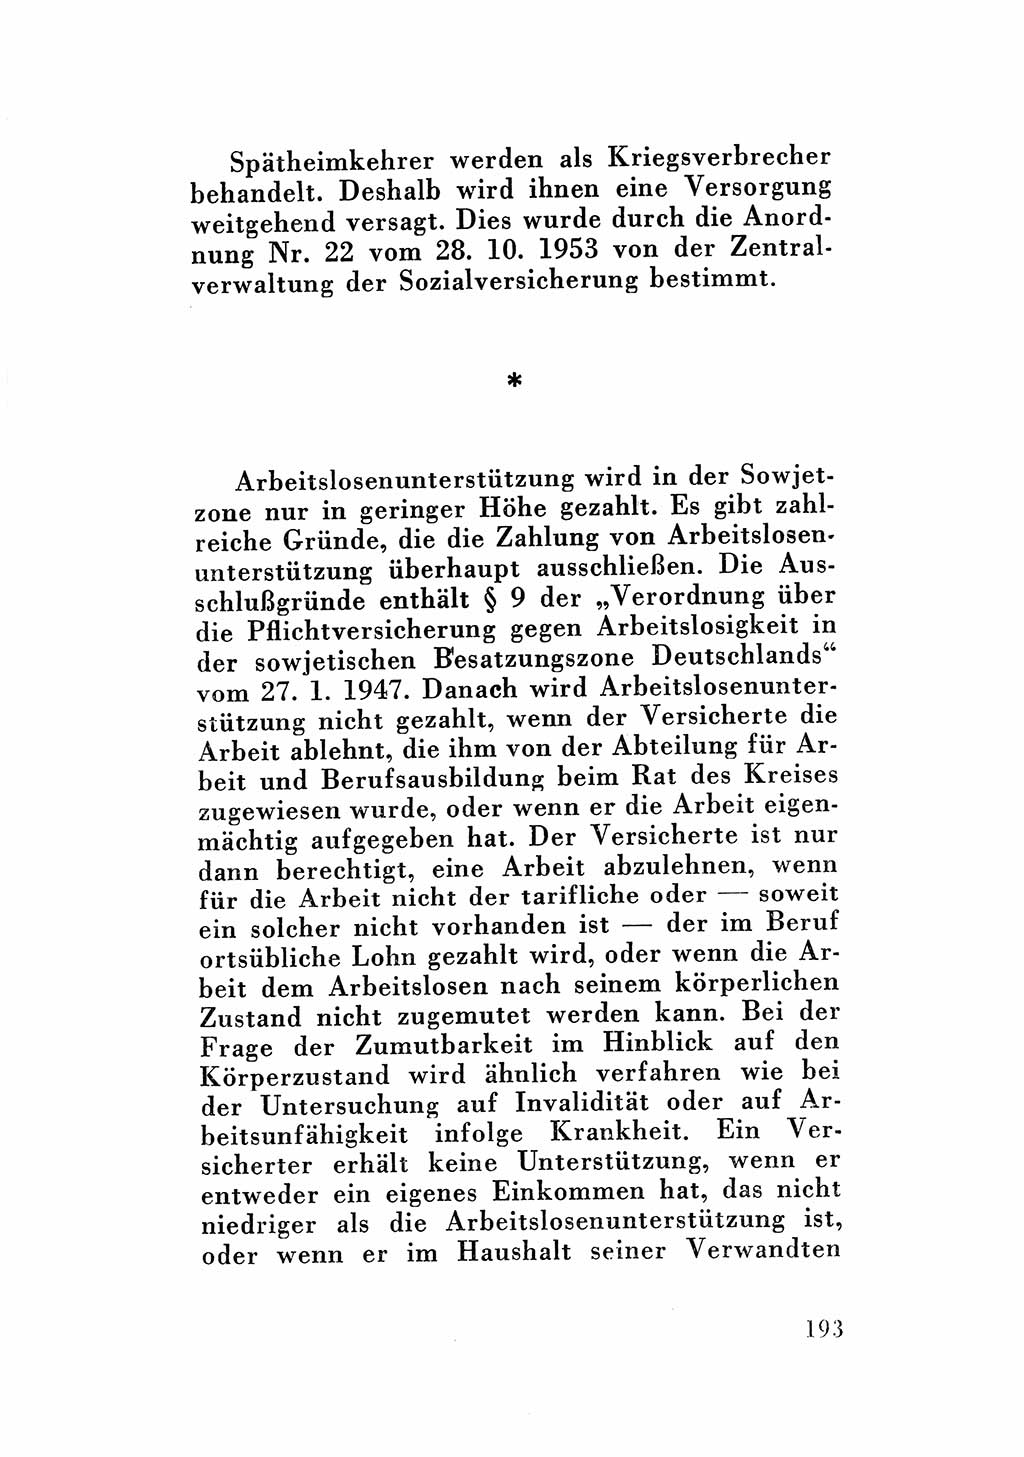 Katalog des Unrechts, Untersuchungsausschuß Freiheitlicher Juristen (UfJ) [Bundesrepublik Deutschland (BRD)] 1956, Seite 193 (Kat. UnR. UfJ BRD 1956, S. 193)